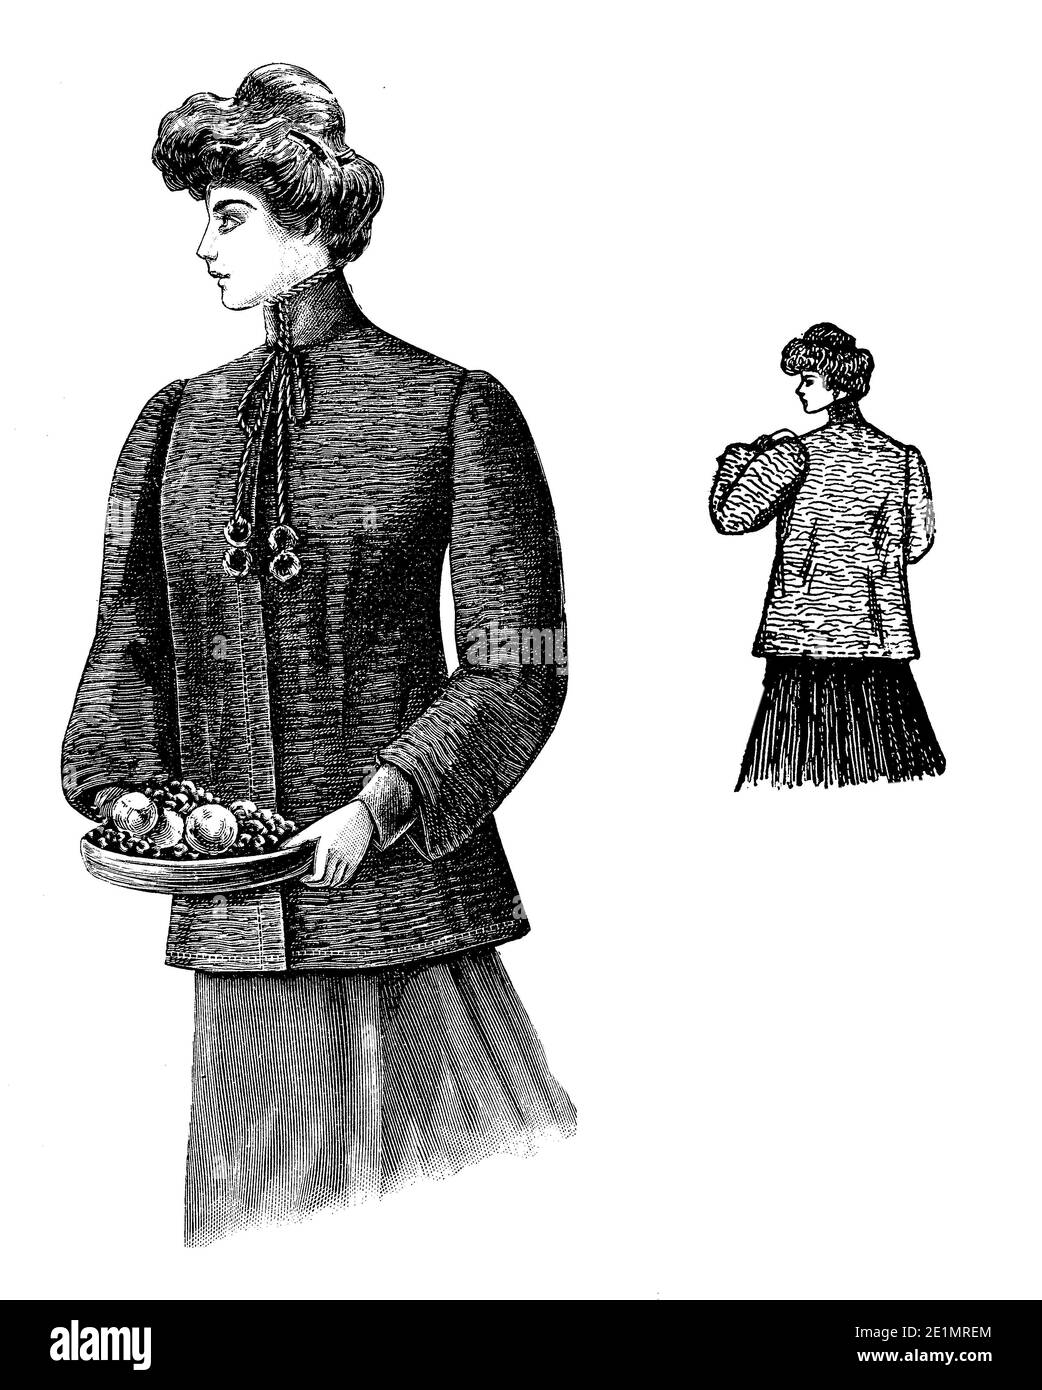 Dames Fashion 1907, des lignes longues, élégantes et minces pour obtenir une silhouette féminine également lors du port d'une veste sévère, complété avec Gibson fille hairstyle, frontal et vue arrière Banque D'Images